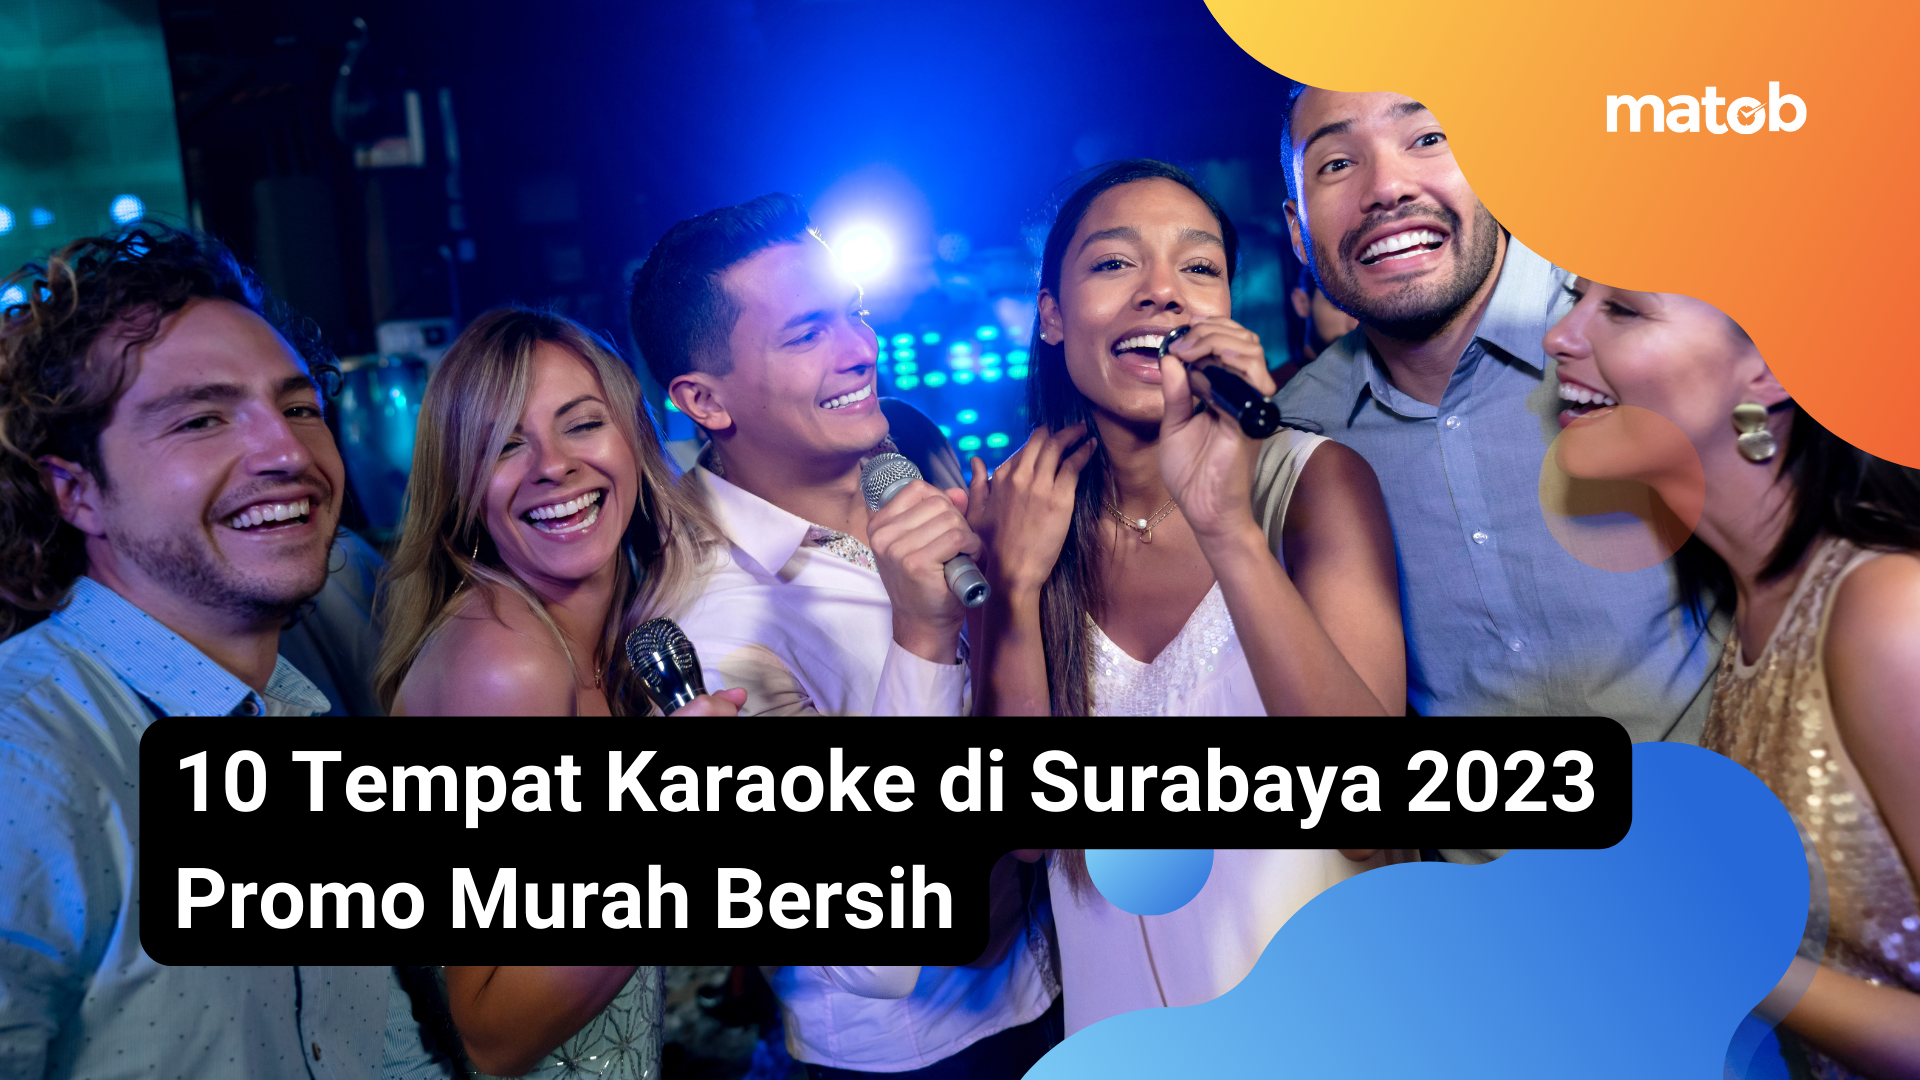 15 Matob Bisnis 10 Tempat Karaoke di Surabaya 2023 Promo Murah Bersih